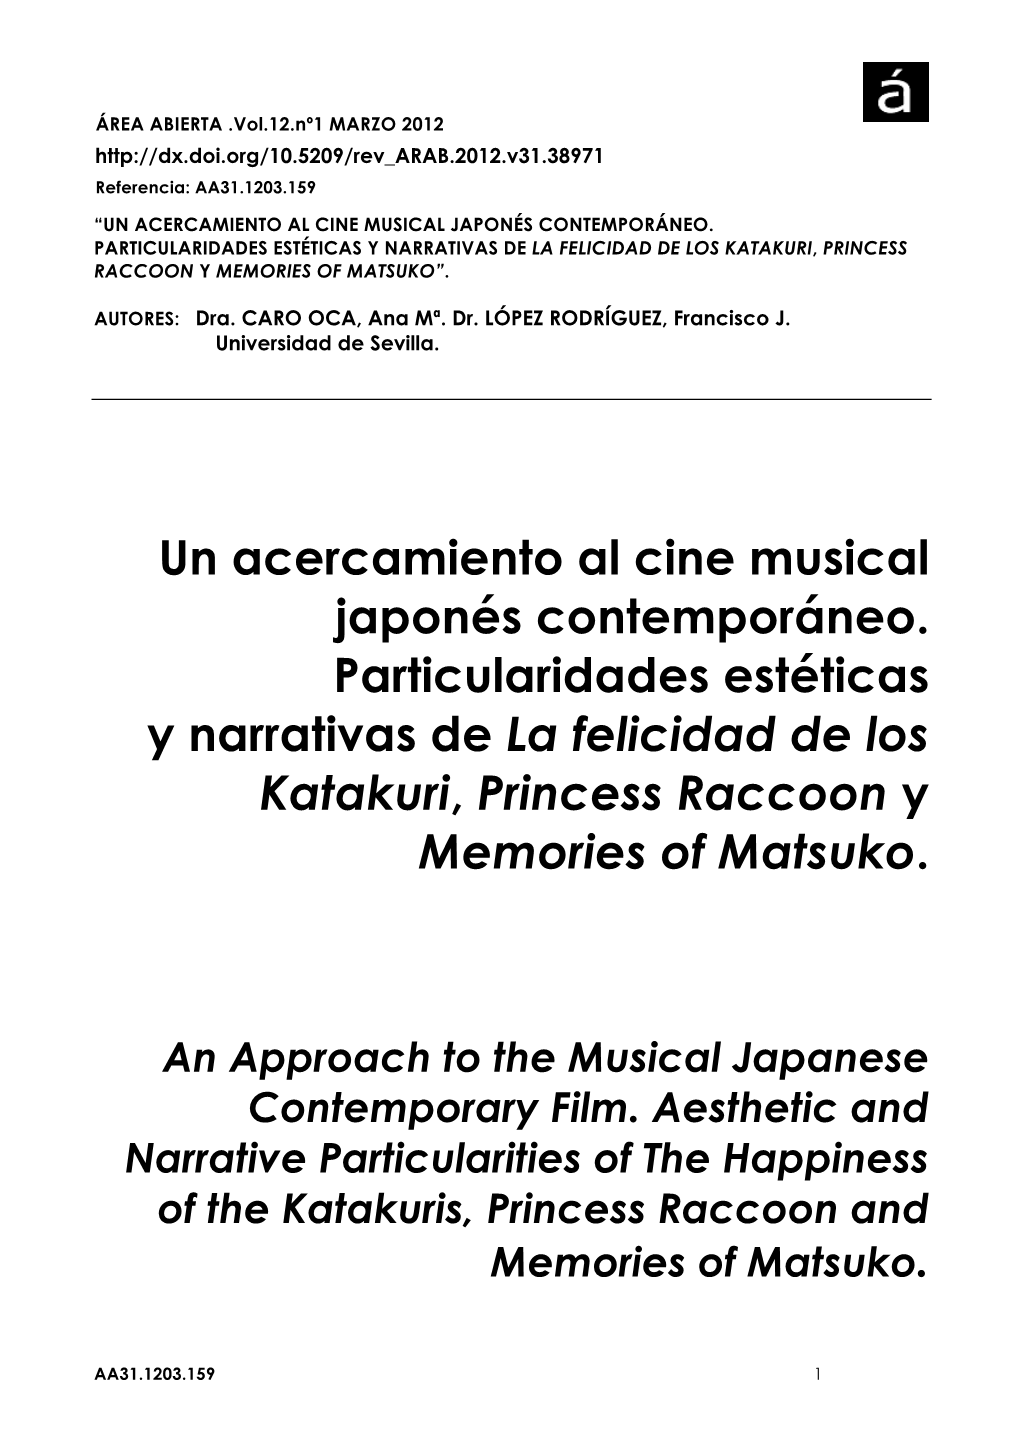 Un Acercamiento Al Cine Musical Japonés Contemporáneo